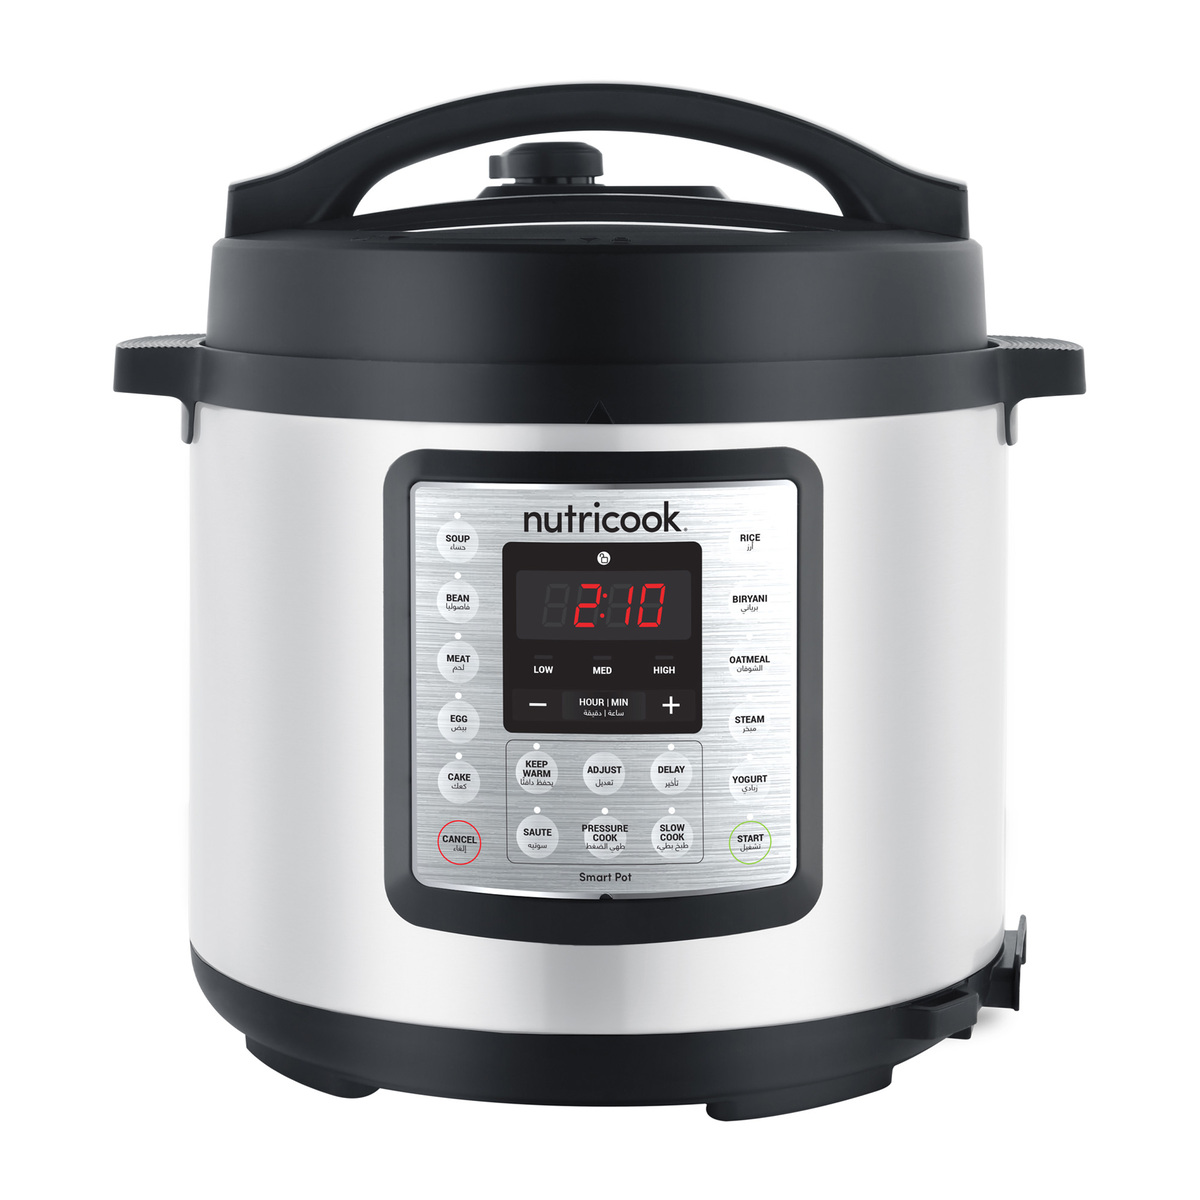 Nutricook Smart Pot Eko 9 in 1 Electric Pressure Cooker, 6 L, 1000 W ...